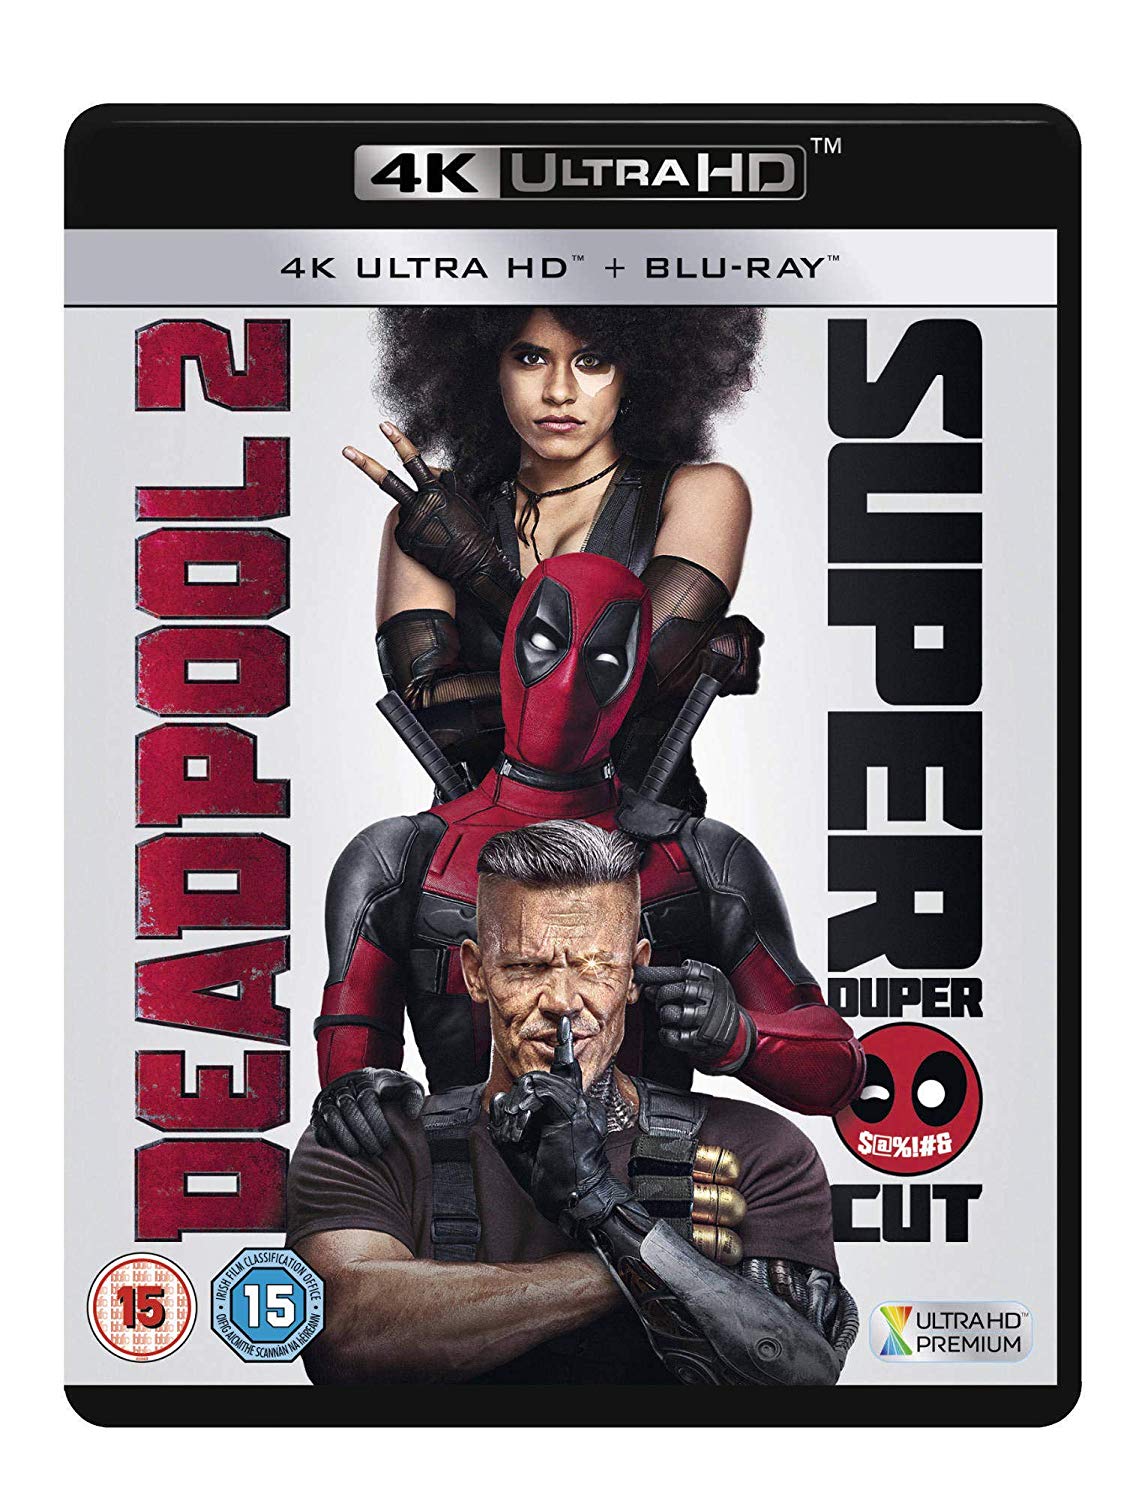 Download Deadpool 2 2018 Super Duper Cut Unrated 2160p 10bit